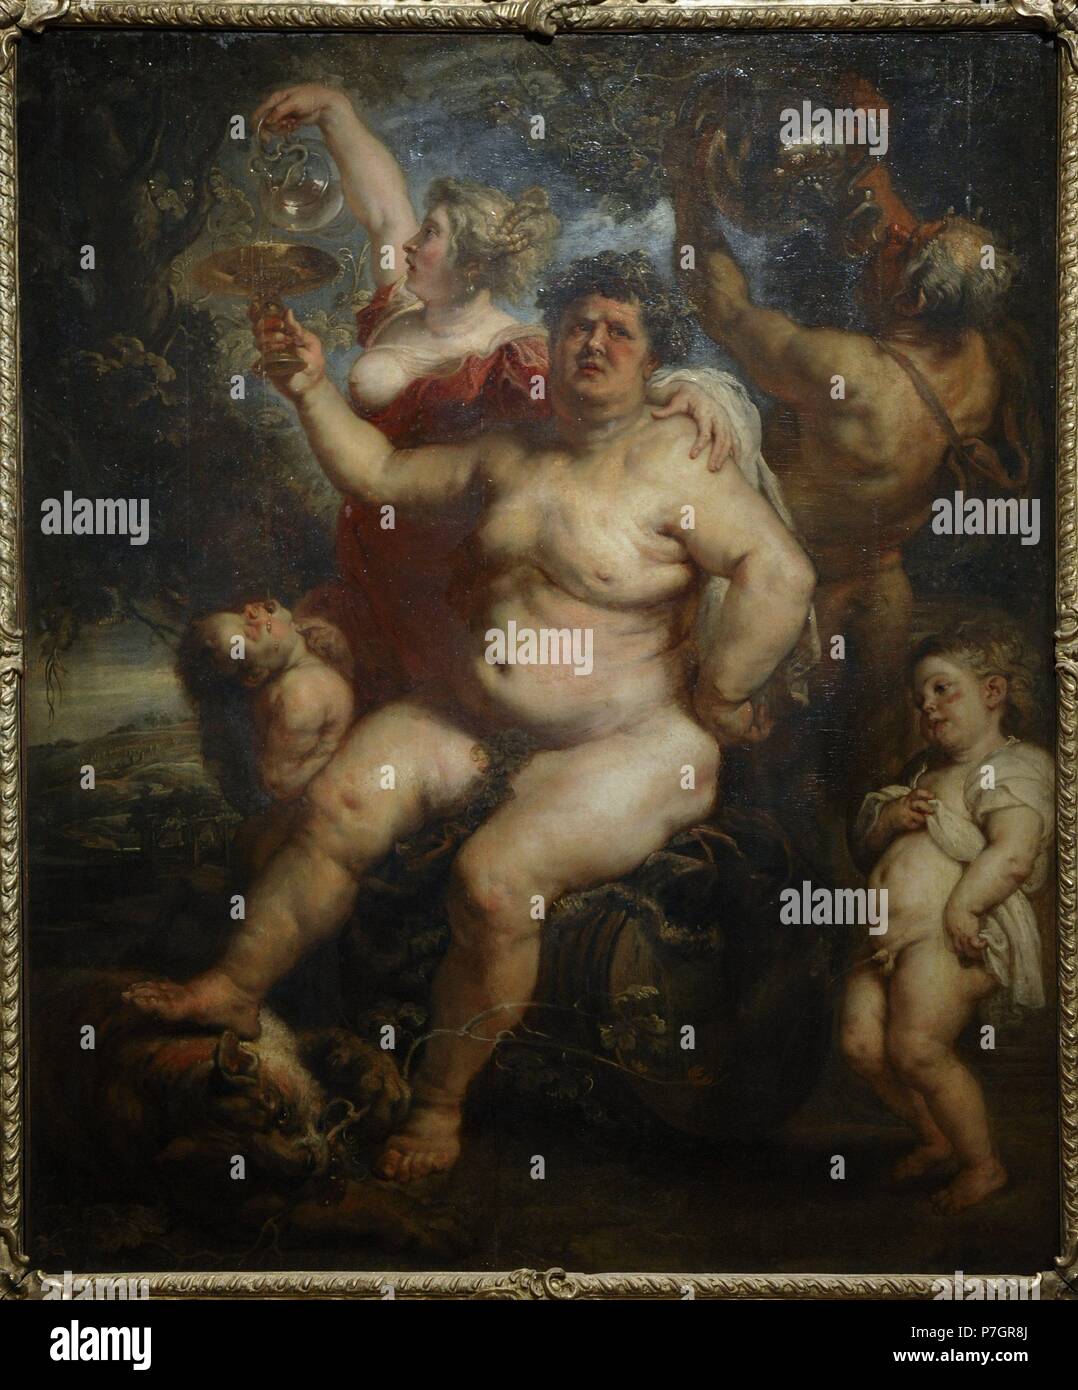 Rubens (1577-1640). Flämischen Barock Maler. Bacchus, 1638-40. Öl auf Leinwand. Die Eremitage. Sankt Petersburg. Russland. Stockfoto